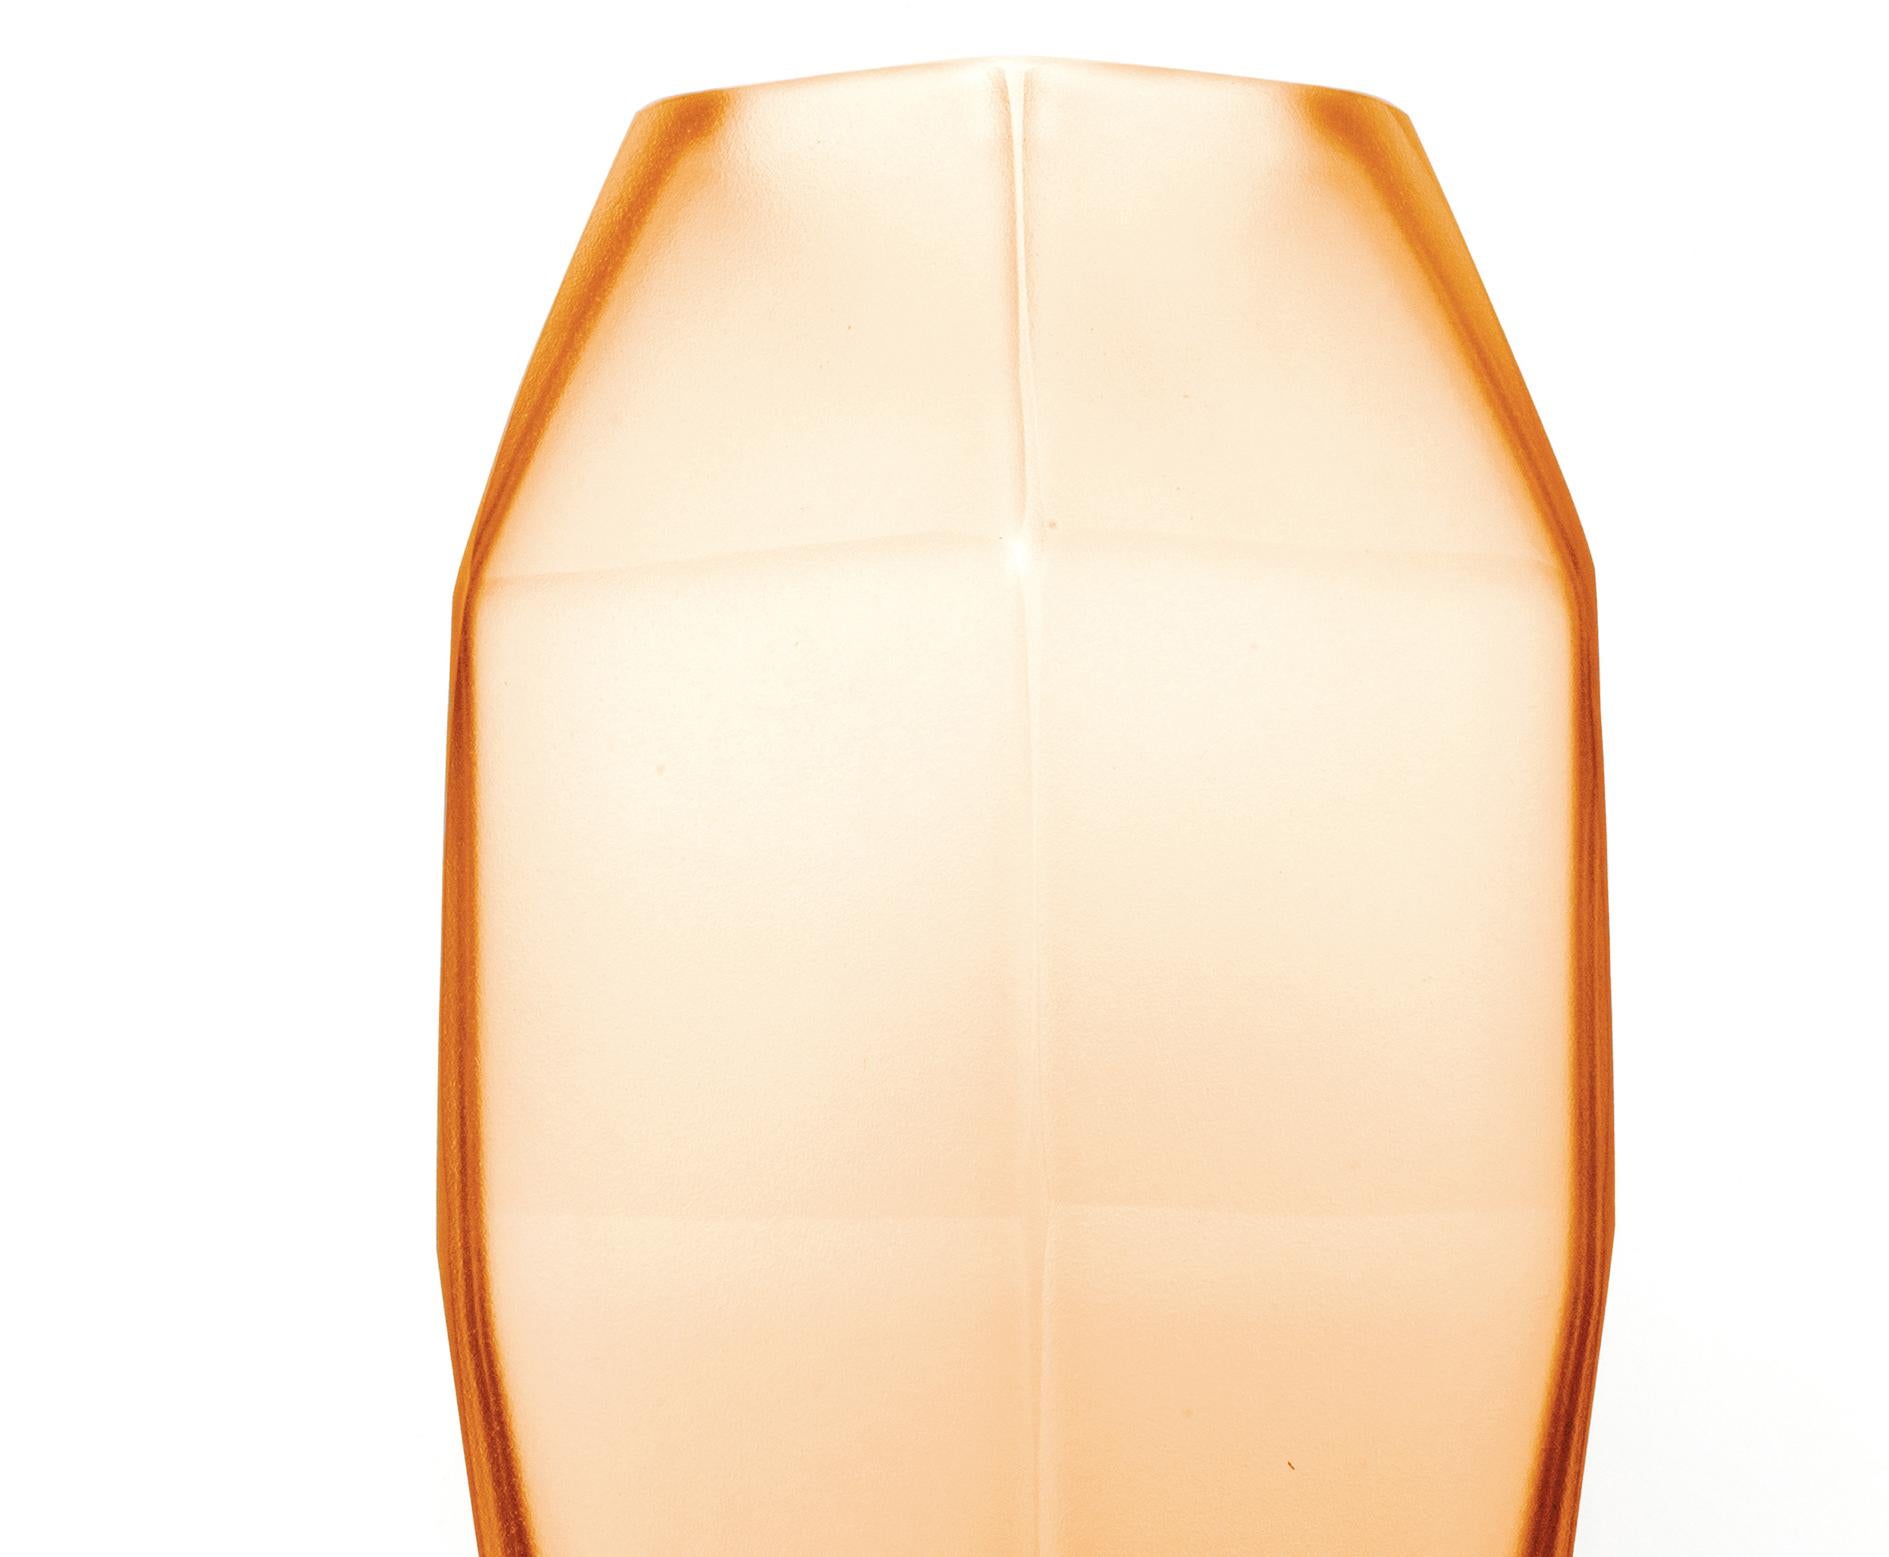 21. Jahrhundert Alessandro Mendini, transparente Vase GEMELLO, Murano-Glas.
Mit den beiden Vasen Gemello und Gemella, die von Alessandro Mendini entworfen wurden, setzt Purho die Suche nach Produkten mit komplementären Formen fort. Die Vasen, die